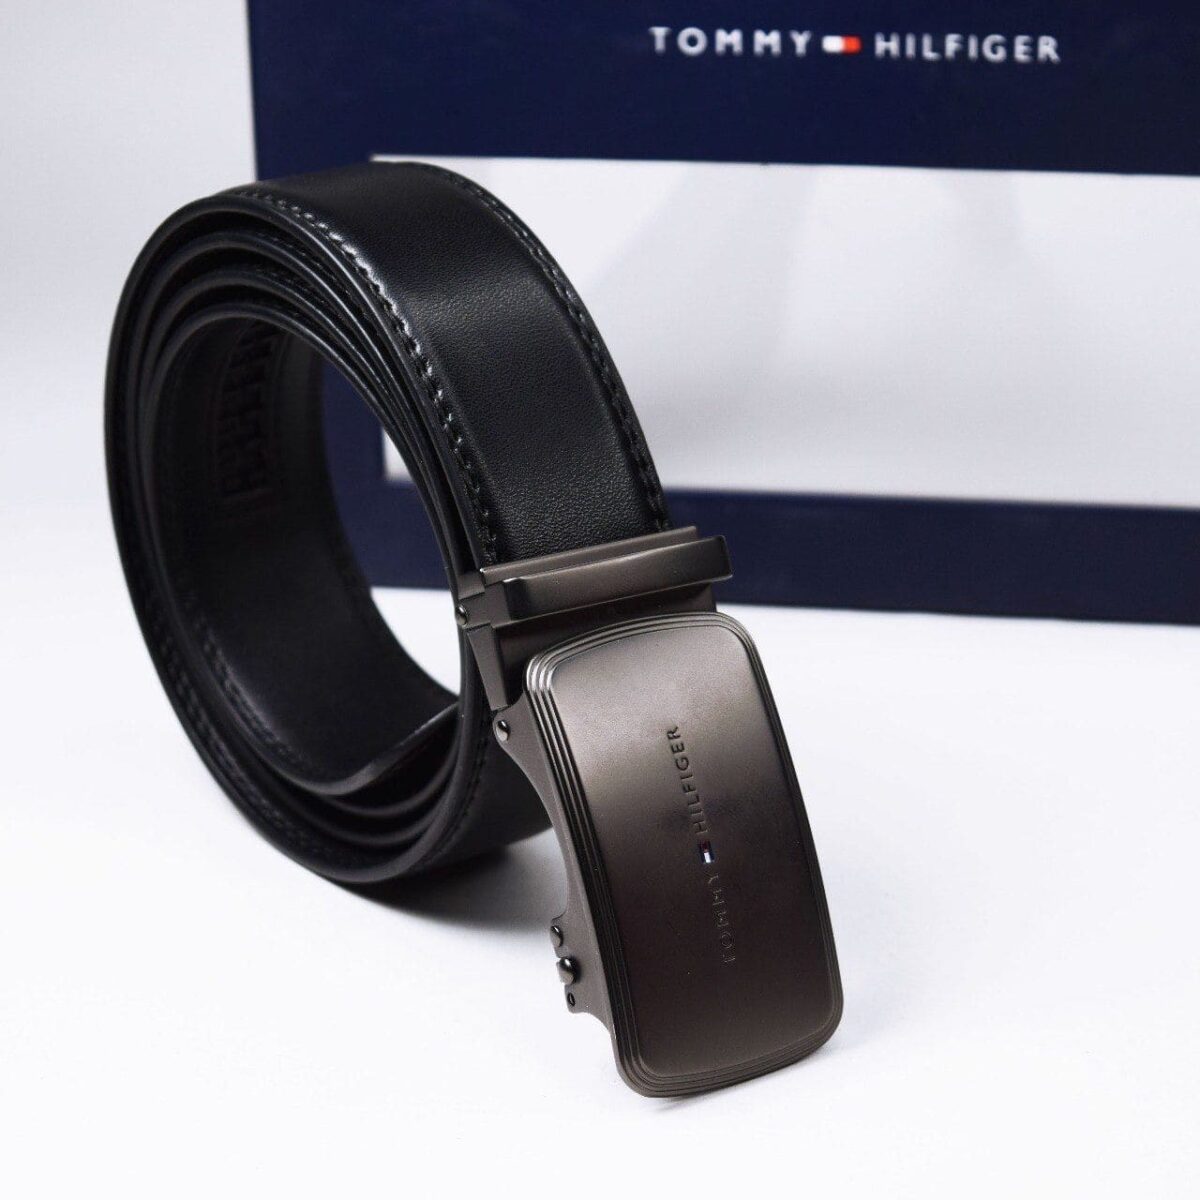 original-belt-tommy-hilfiger-in-egypt-for-men-black-leather-color-TH-egypt